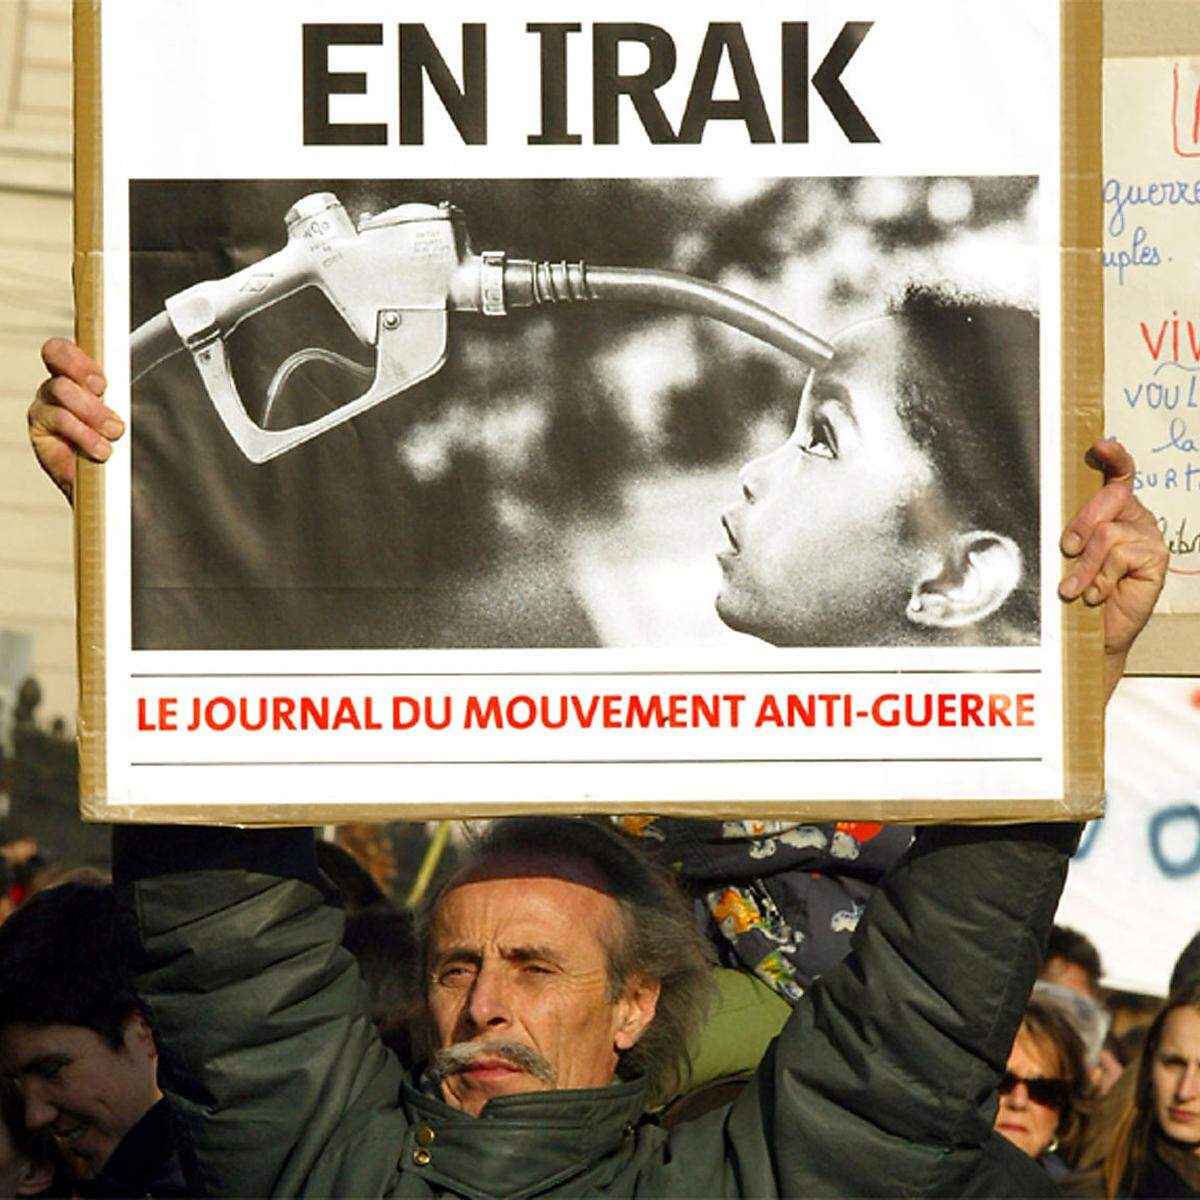 Dieser Demonstrant in Marseille sah ebenfalls eine Verbindung zwischen Invasion und Ölquellen.